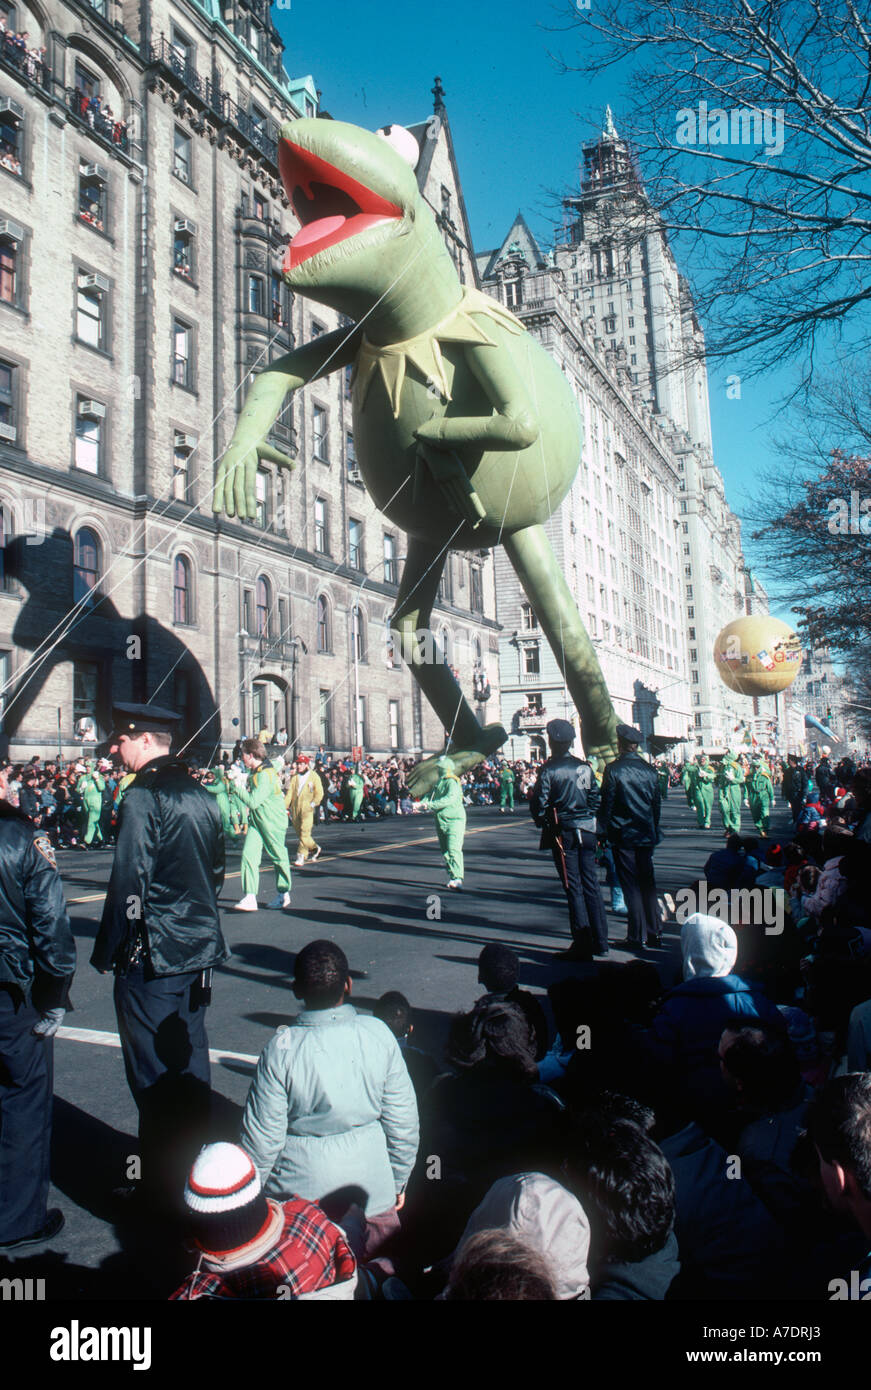 New York NY USA öffentliche Veranstaltungen riesigen Ballon Hermt Frosch-Cartoon-Figur Macy s Thanksgiving Day Parade Straße Stockfoto